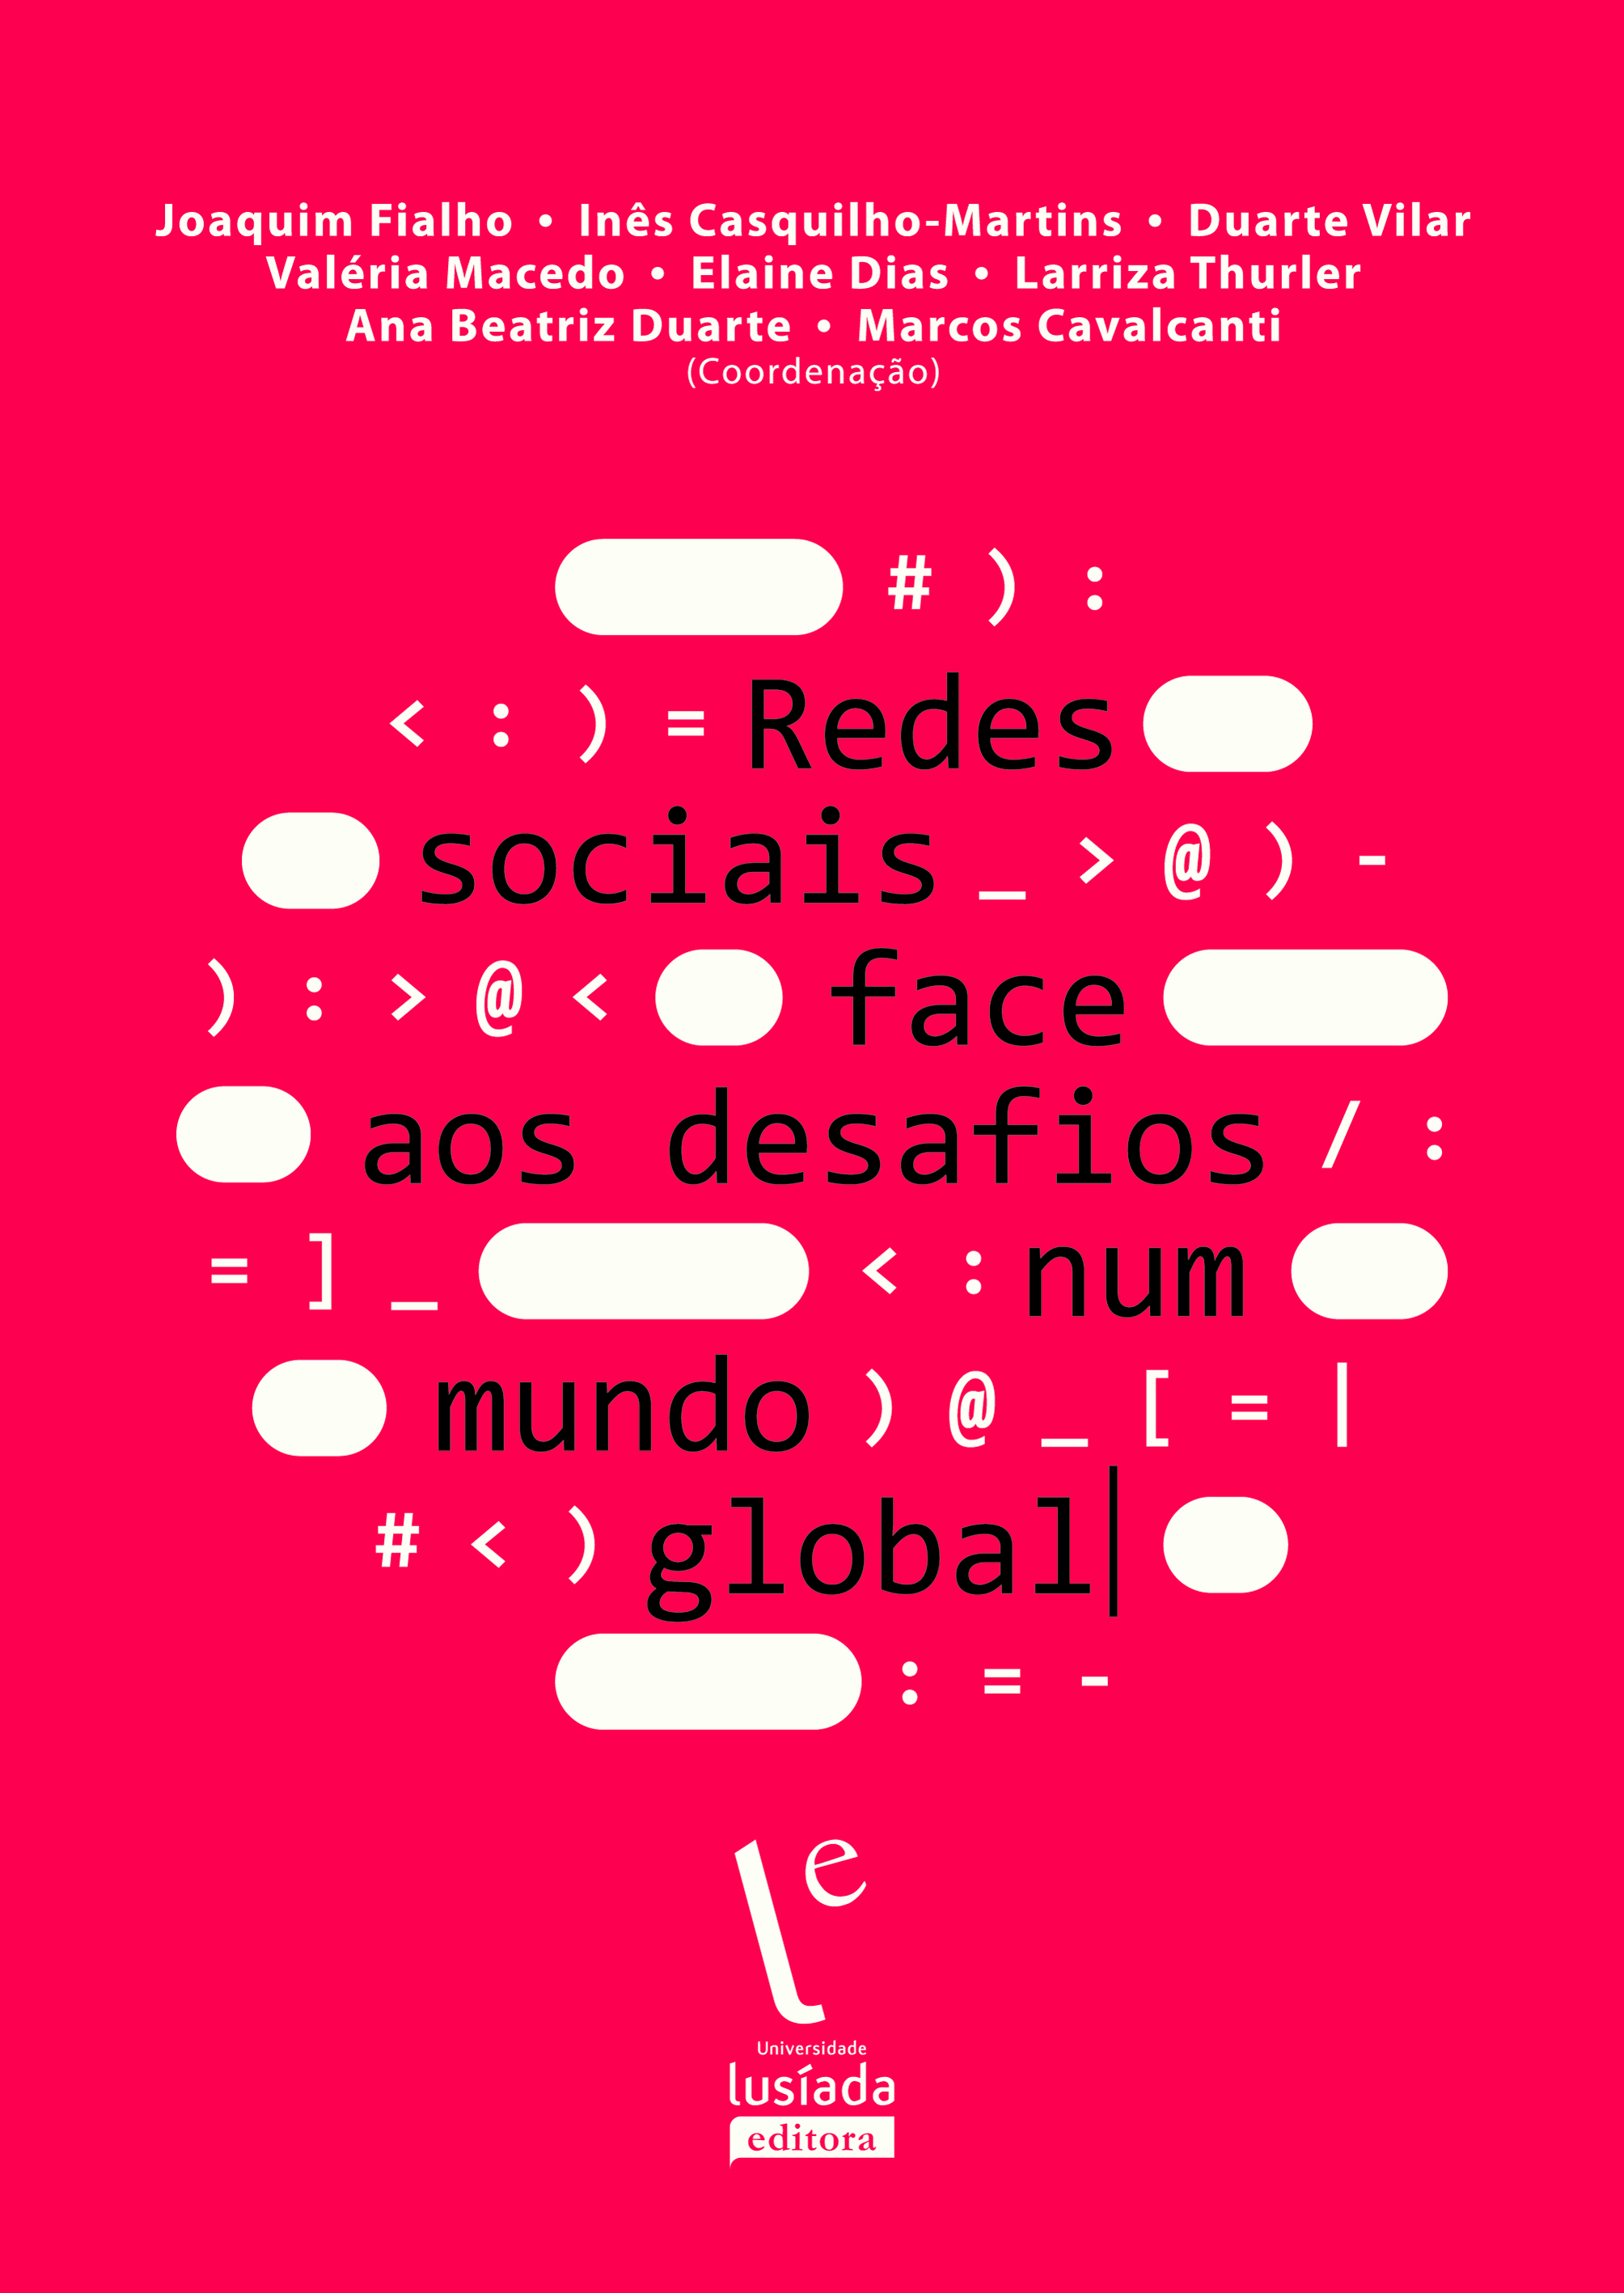 Redes sociais face aos desafios num mundo global - Universidade Lusíada Editora